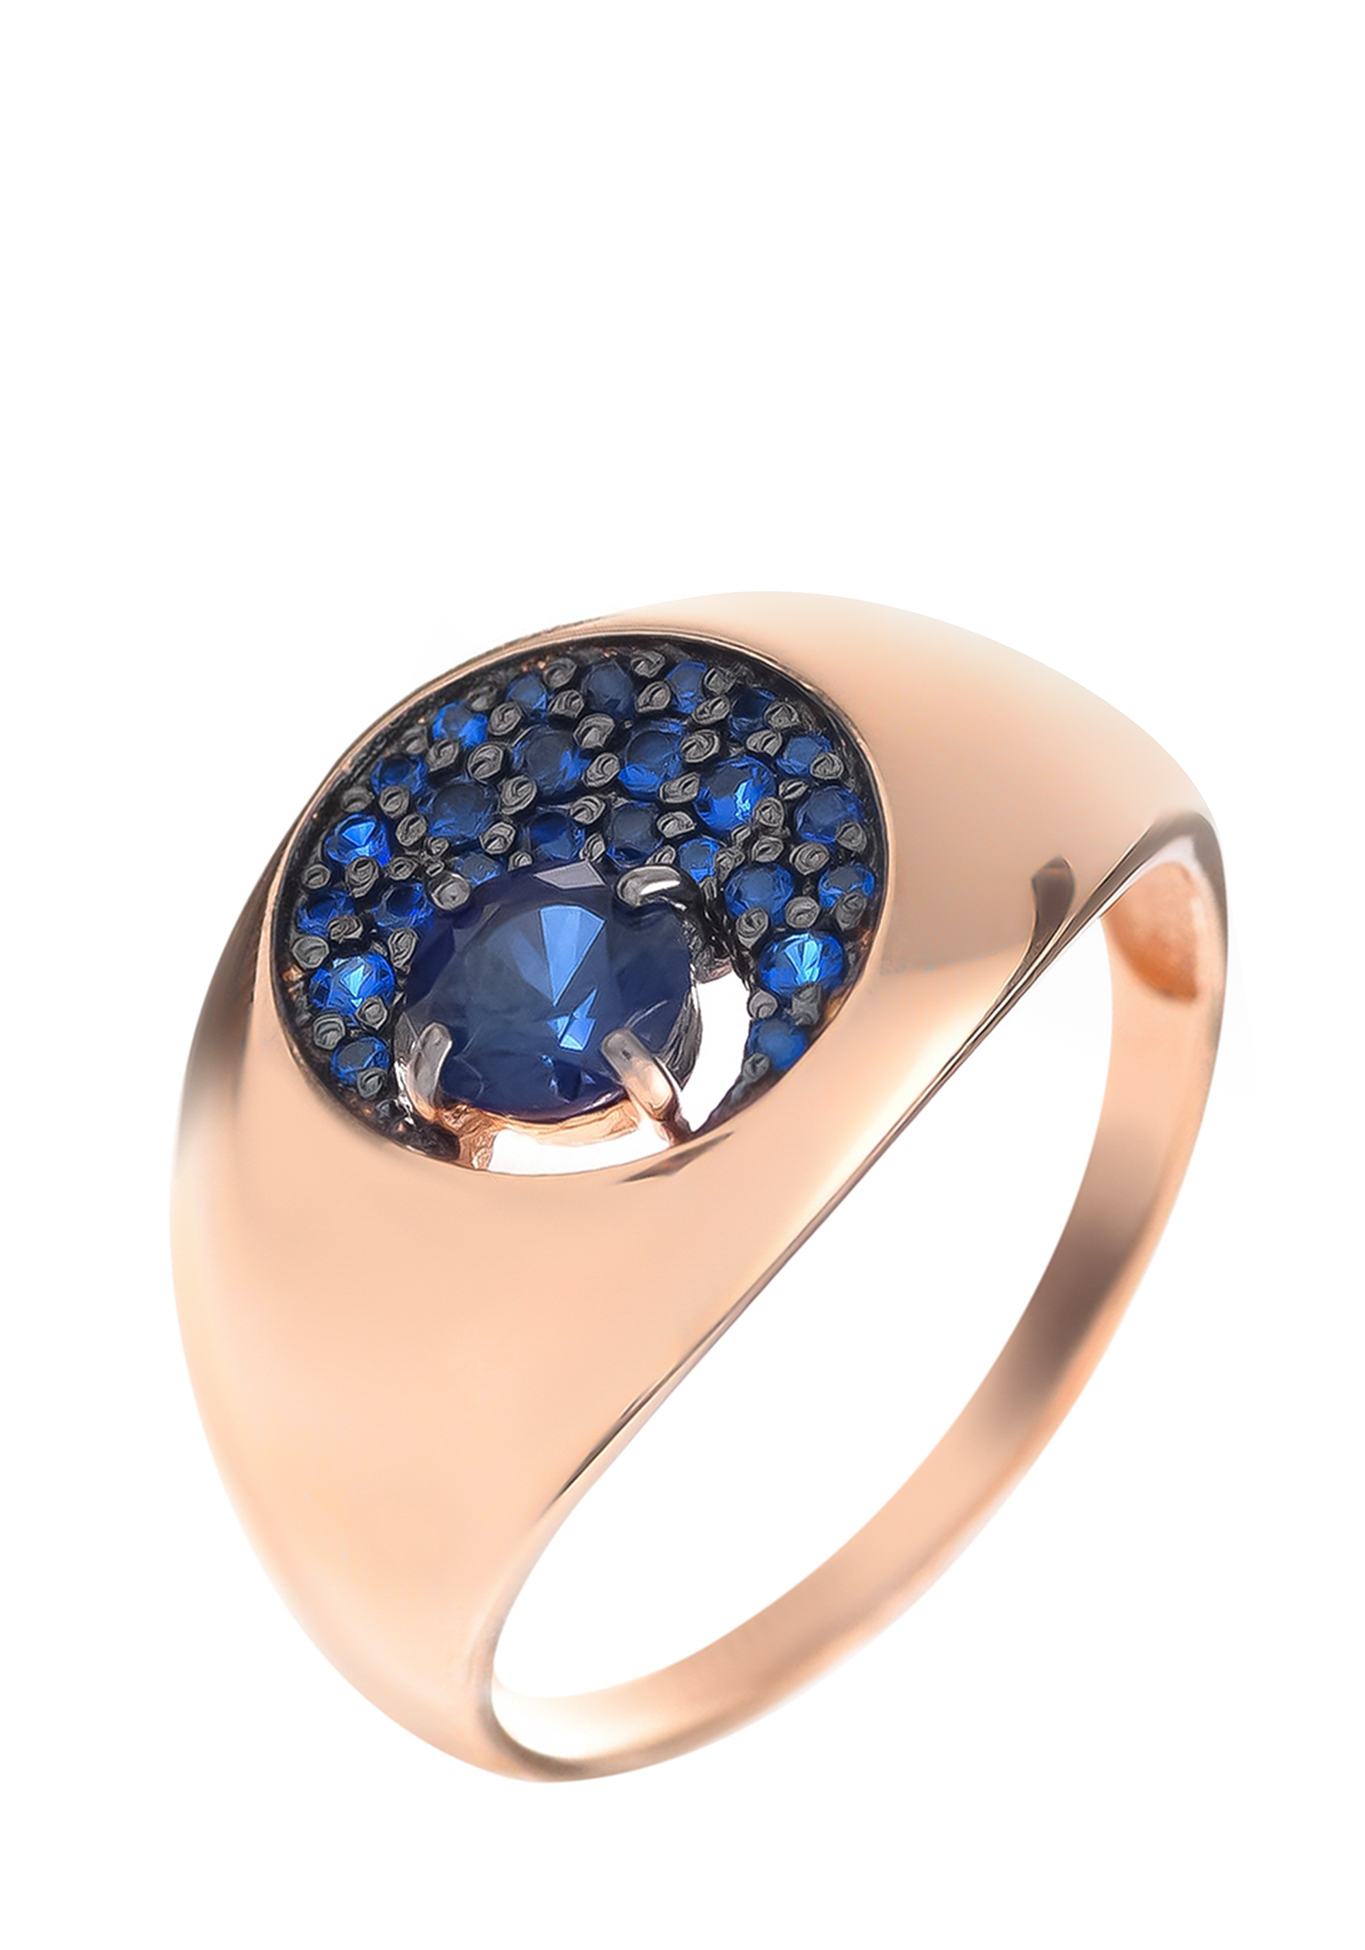 Серебряное кольцо «Мерцание ночи» Серебряный Дом, цвет синий, размер 17 перстень - фото 1